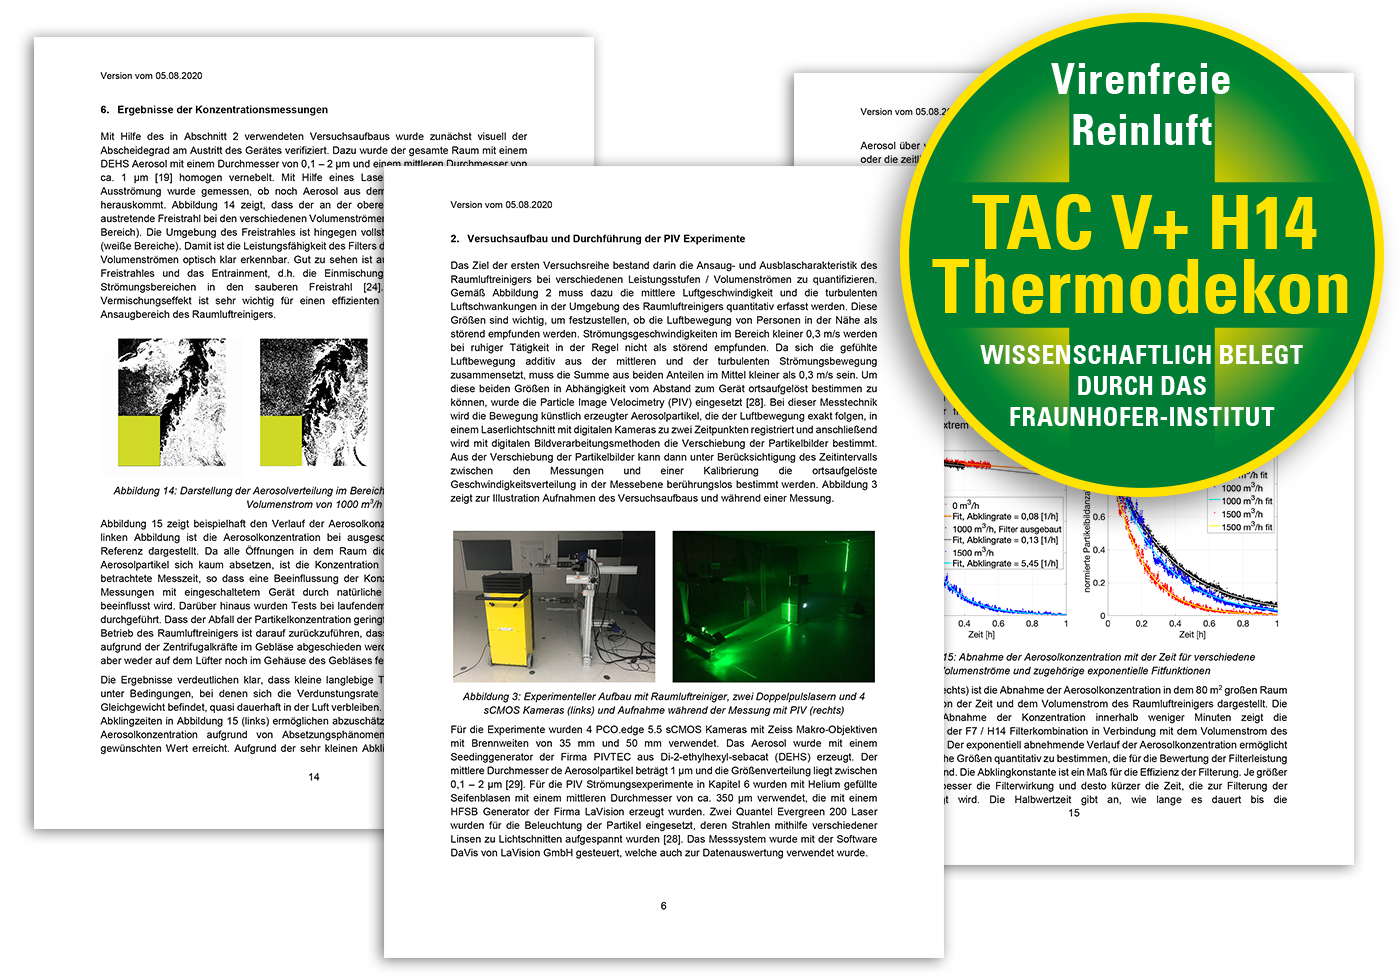 TAC V+ med vitenskapelig bevist effektivitet!